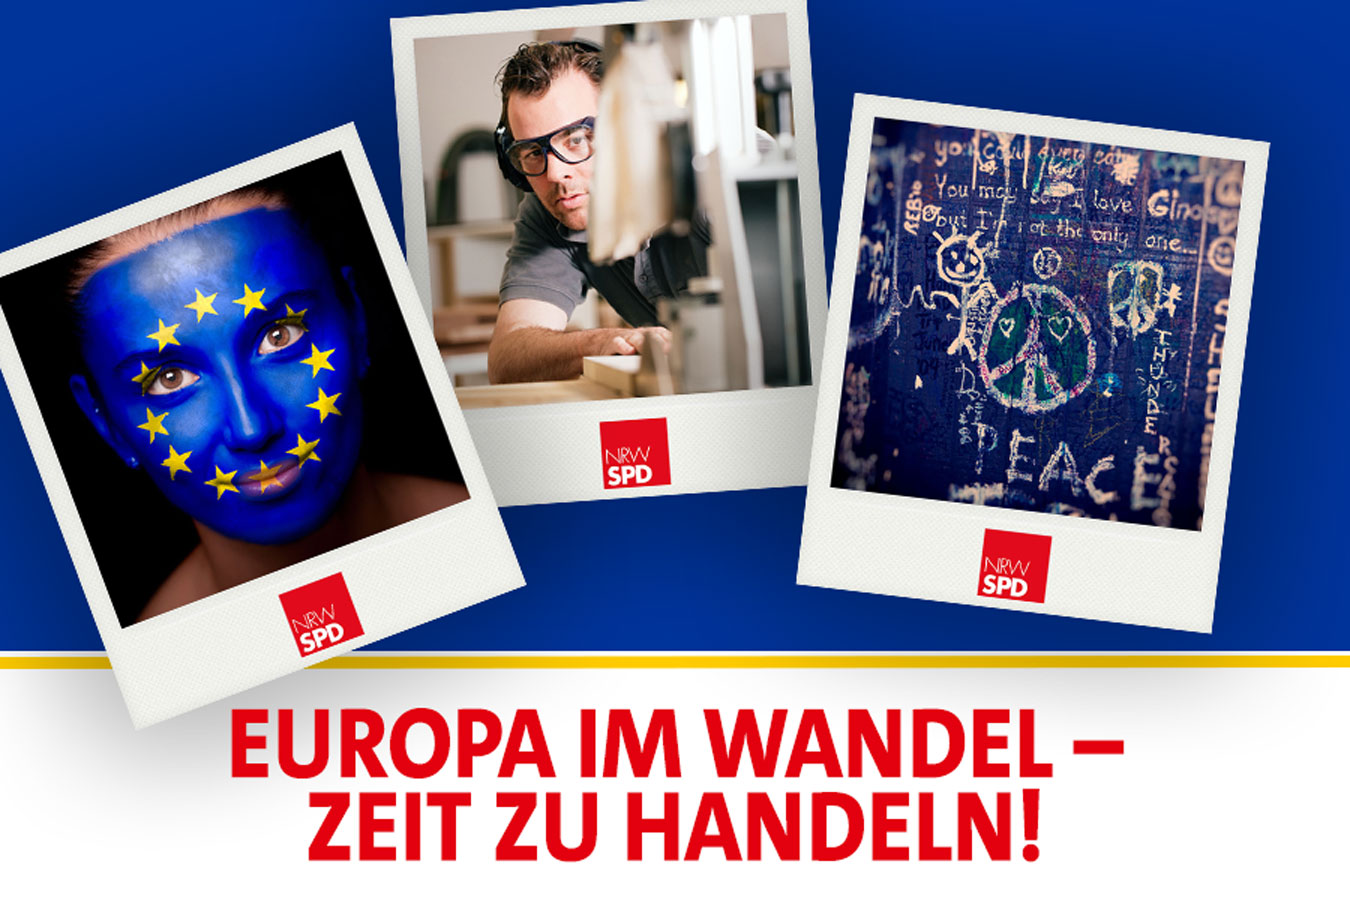 Digitales Banner mit Polaroids. Eine Frau mit aufgemalter EU-Flagge über das Gesicht, Ein Schreiner bei seiner Arbeit, eine beschriebene Wand. Darunter steht "Europa im Wandel - Zeit zu handeln!"